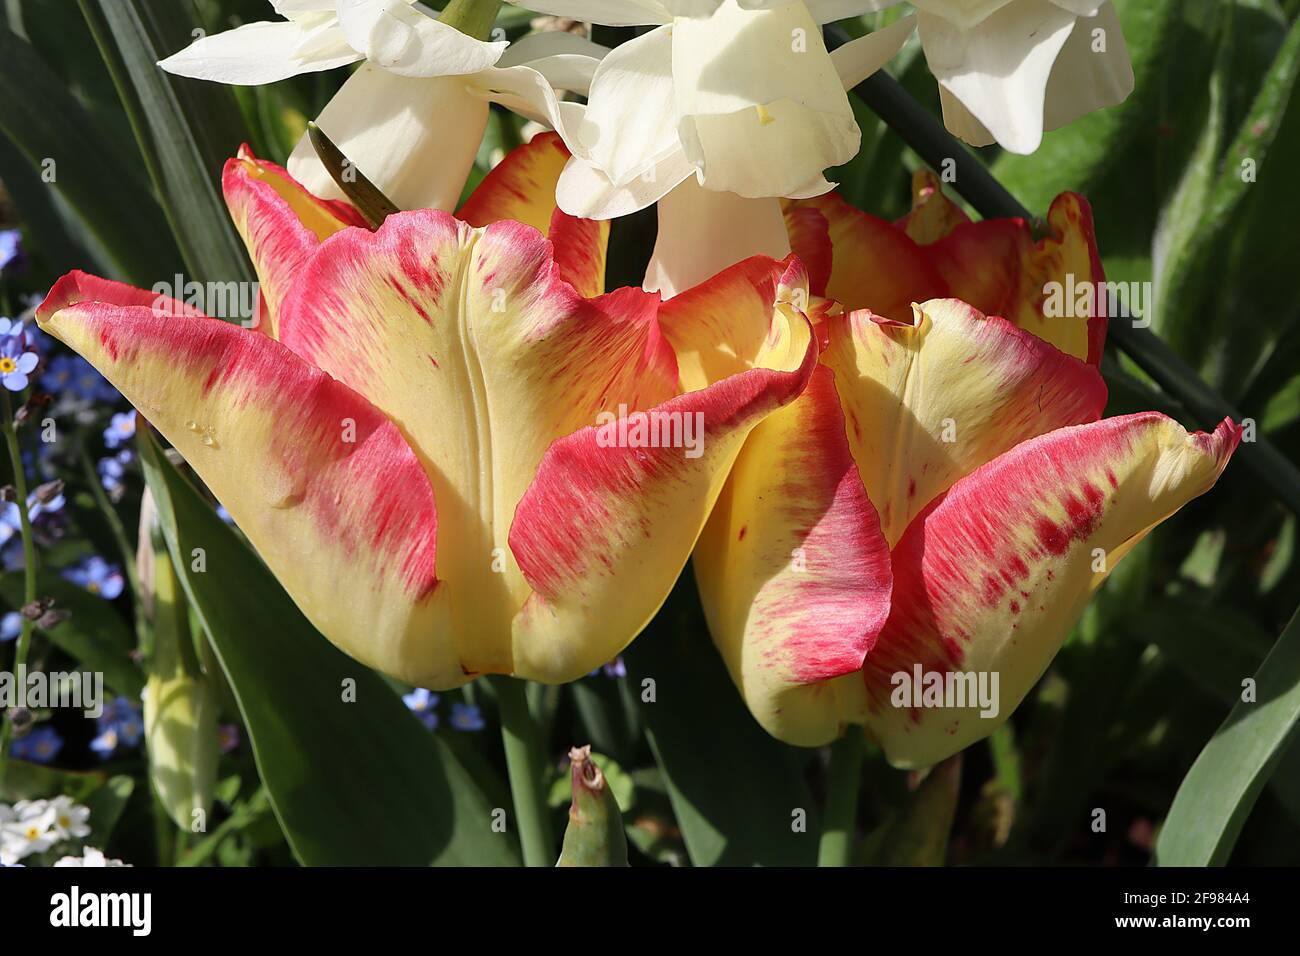 Tulipa ‘Città del Capo’ singolo primo 1 tulipano di Città del Capo – fiori gialli al limone, bordi rossi, aprile, Inghilterra, Regno Unito Foto Stock